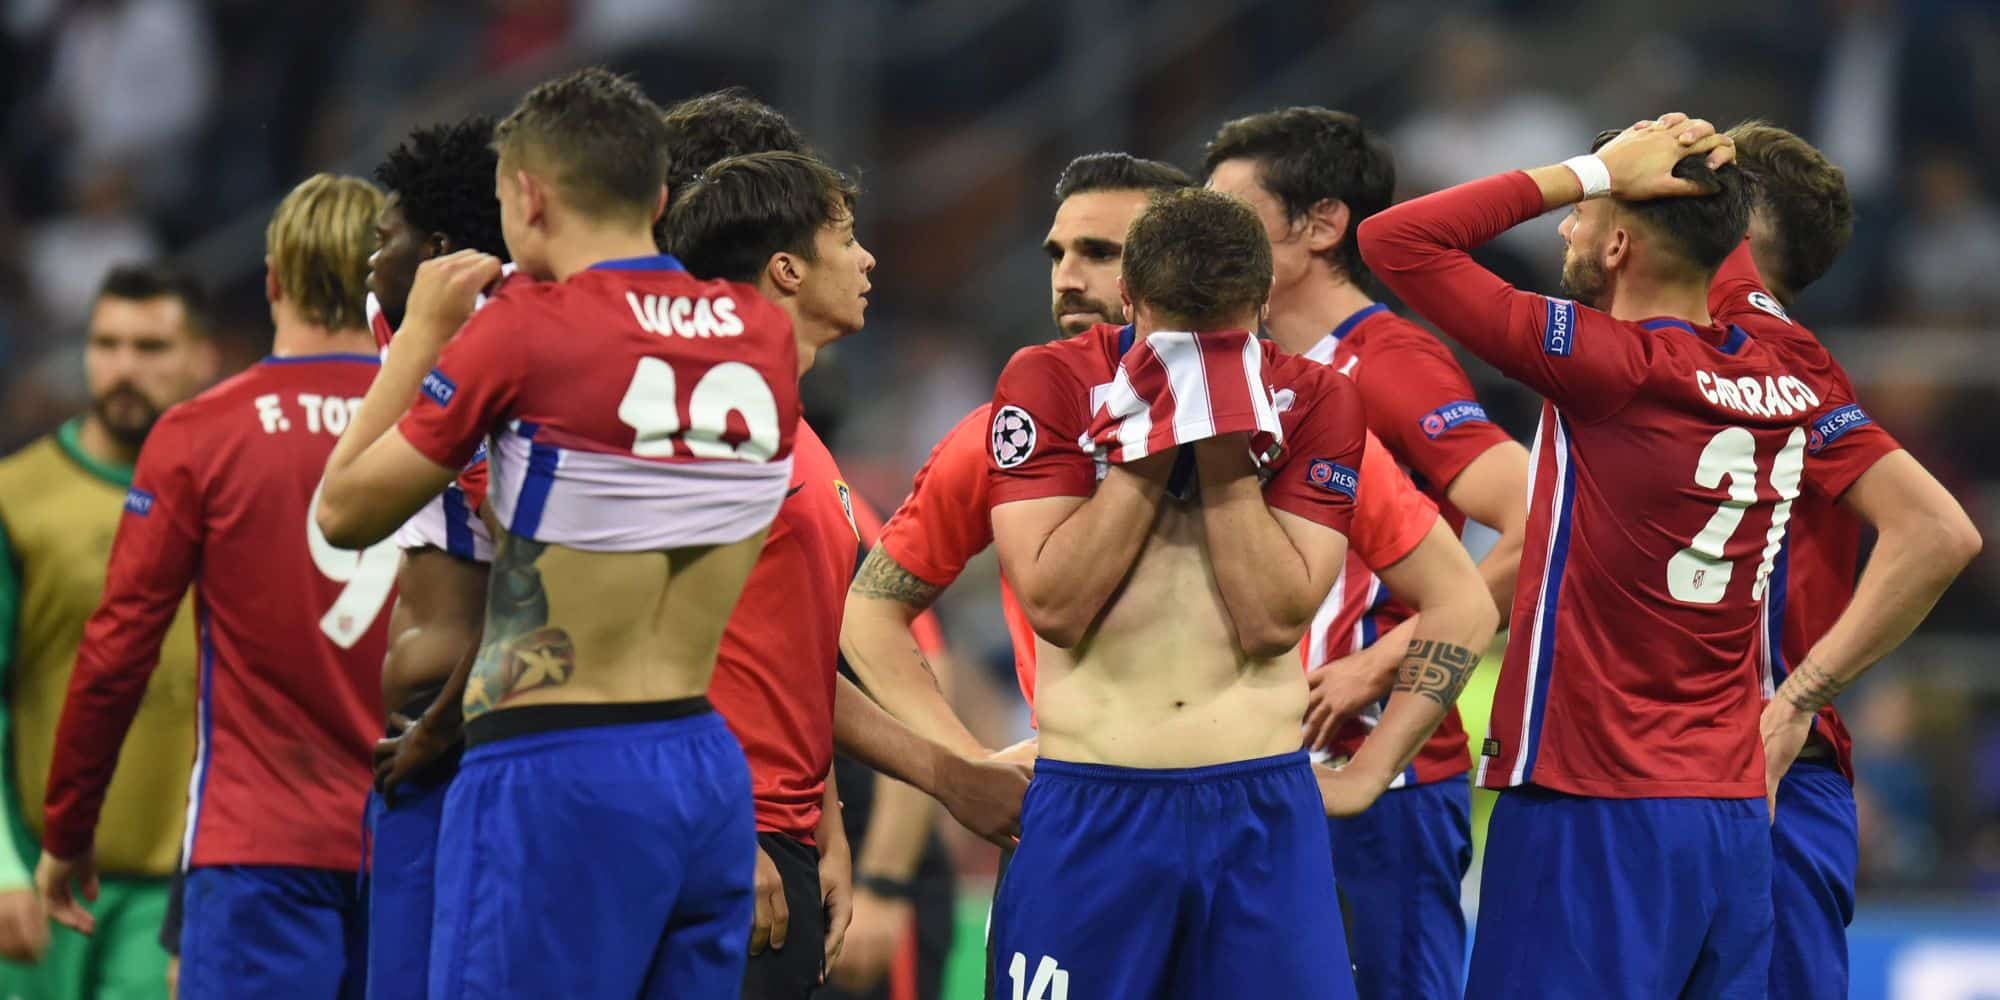 Οι παίκτες της Ατλέτικο Μαδρίτης μετά τον τελικό του Champions League κόντρα στην Ρεάλ στο Μιλάνο